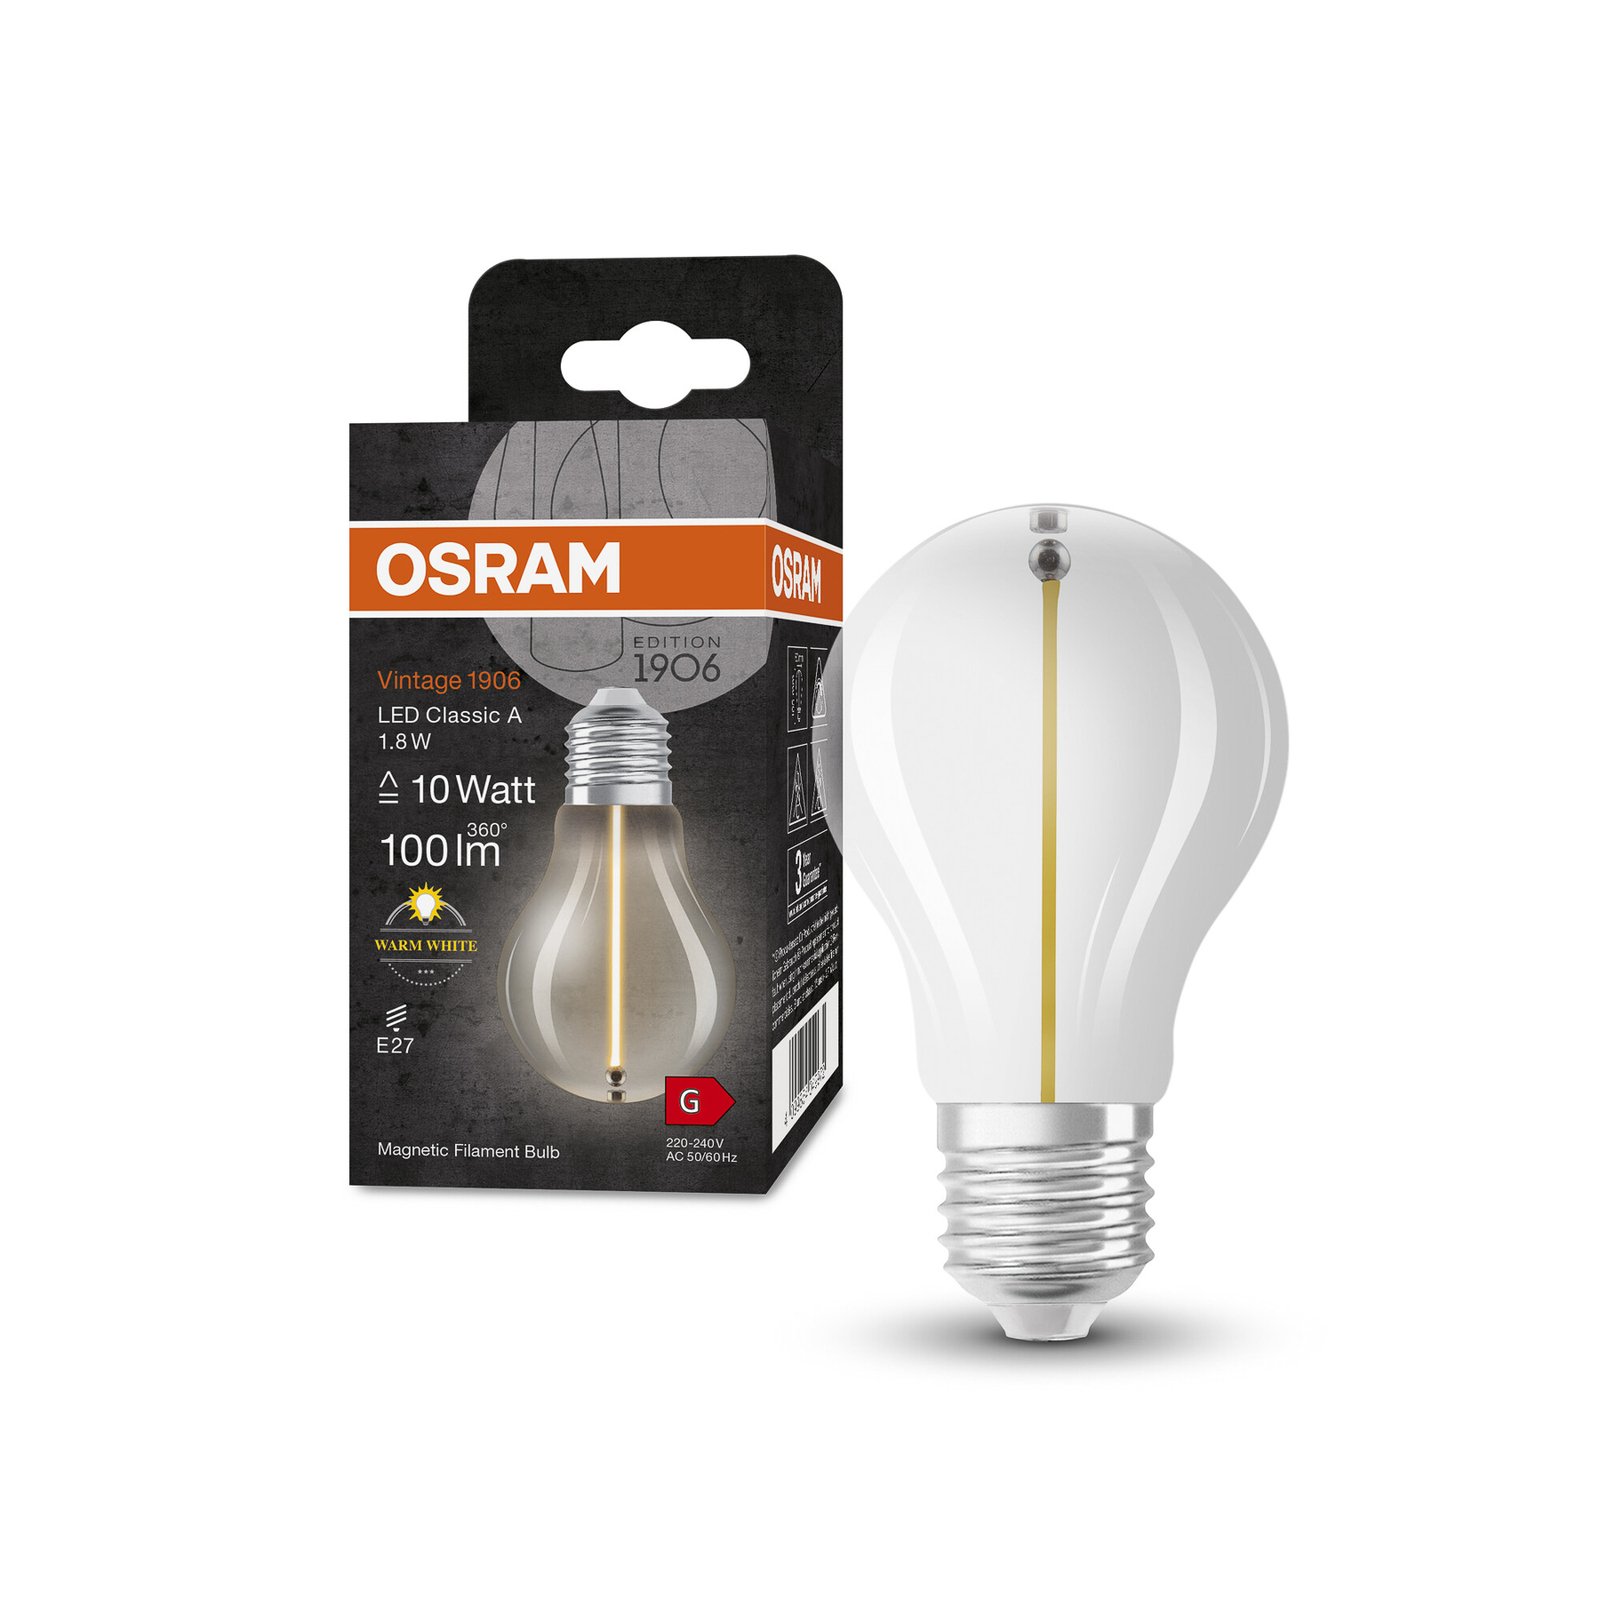 OSRAM Vintage 1906 LED-lamp E27 1.8W 827 hõõgniit